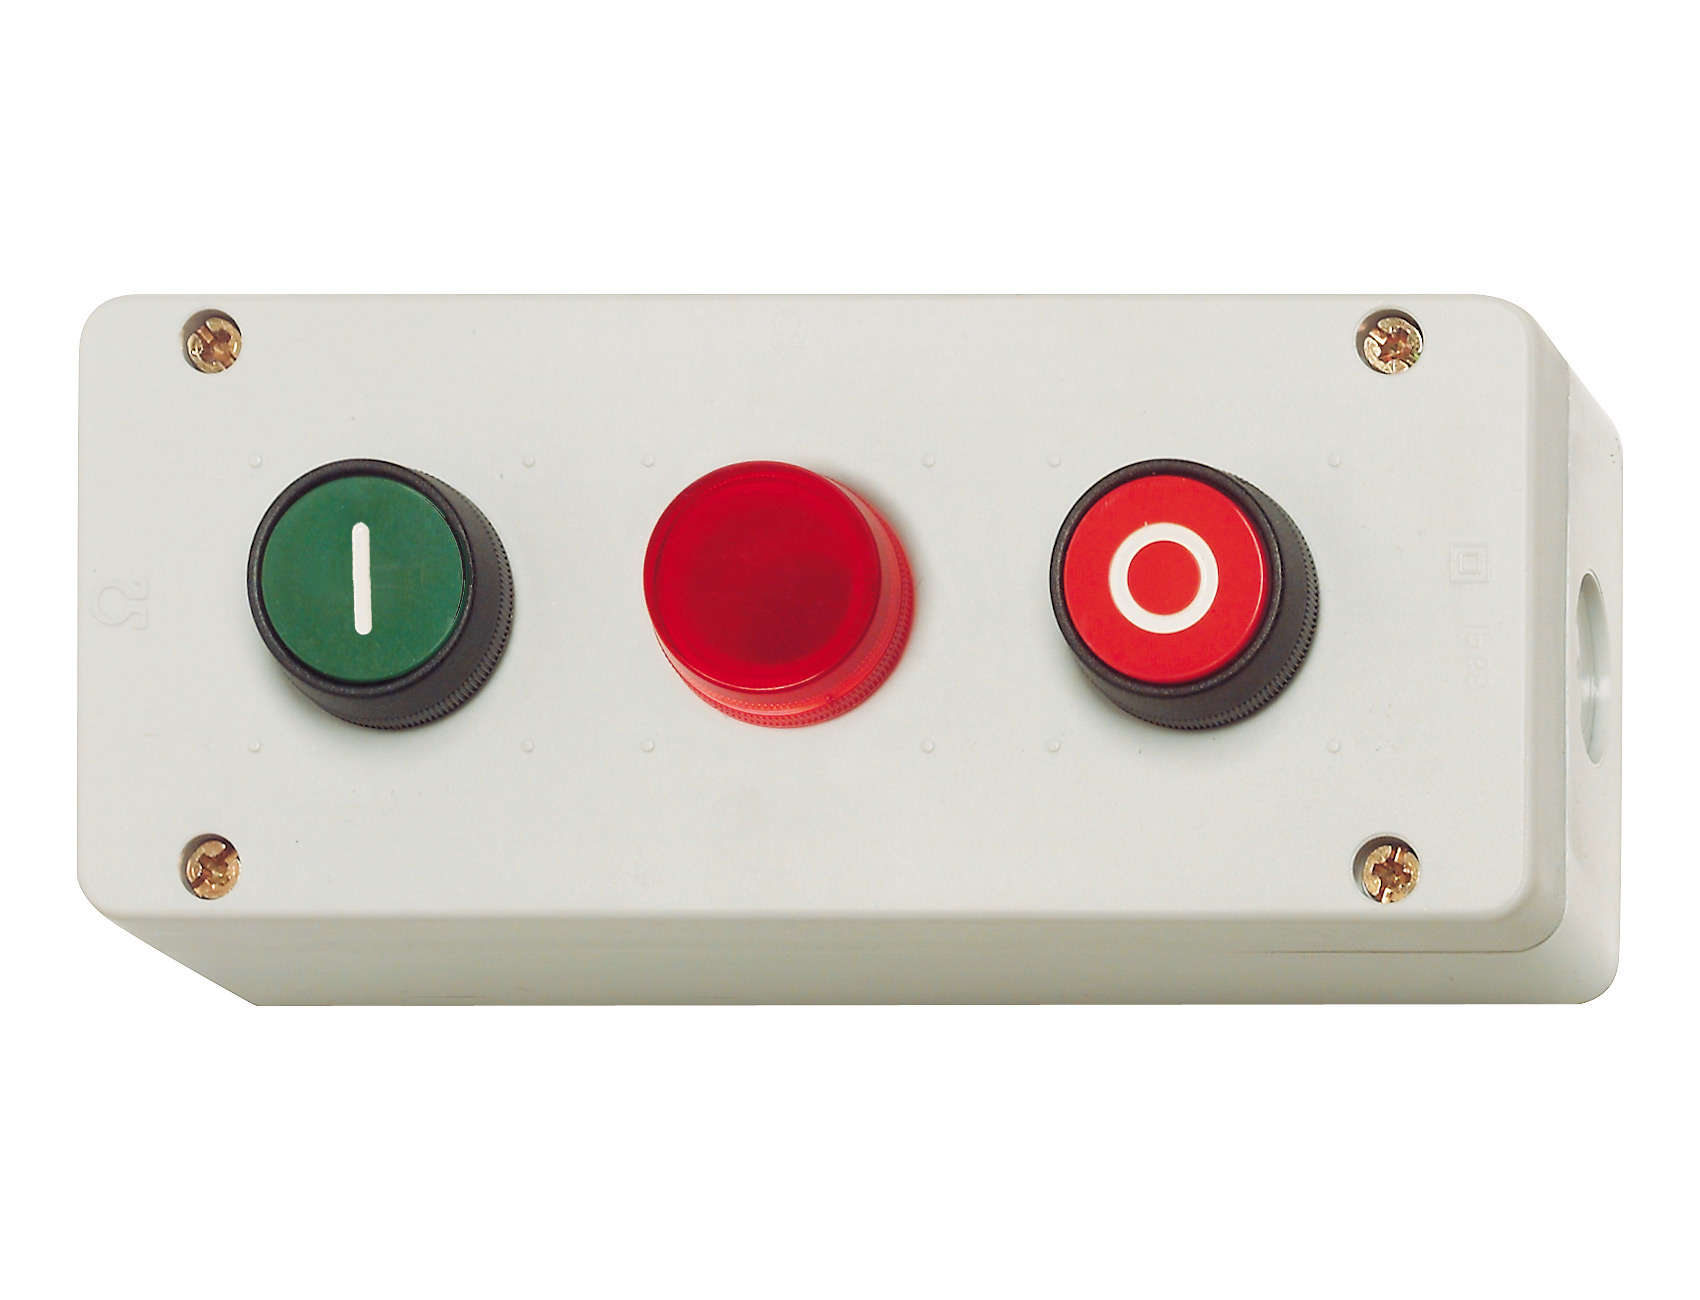 Кнопки "On" и "Off" и красный индикатор в корпусе IP67, красная " 0 ", зеленая " I " BG21 RT Benedict